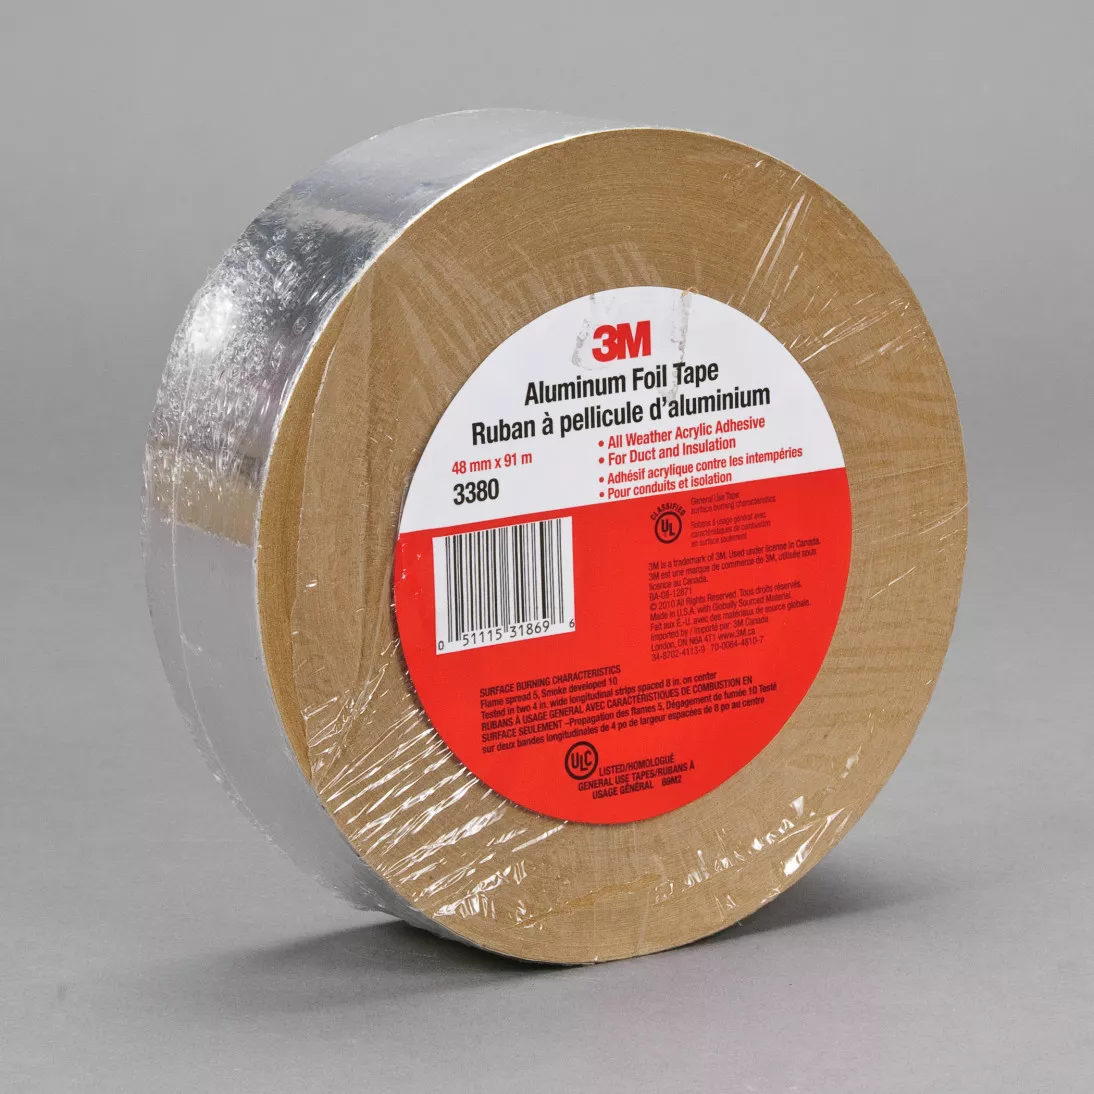 3M™ Aluminum Foil Tape 3380, Silver, 4 in x 60 yd, 3.25 mil, 15 roll per
case